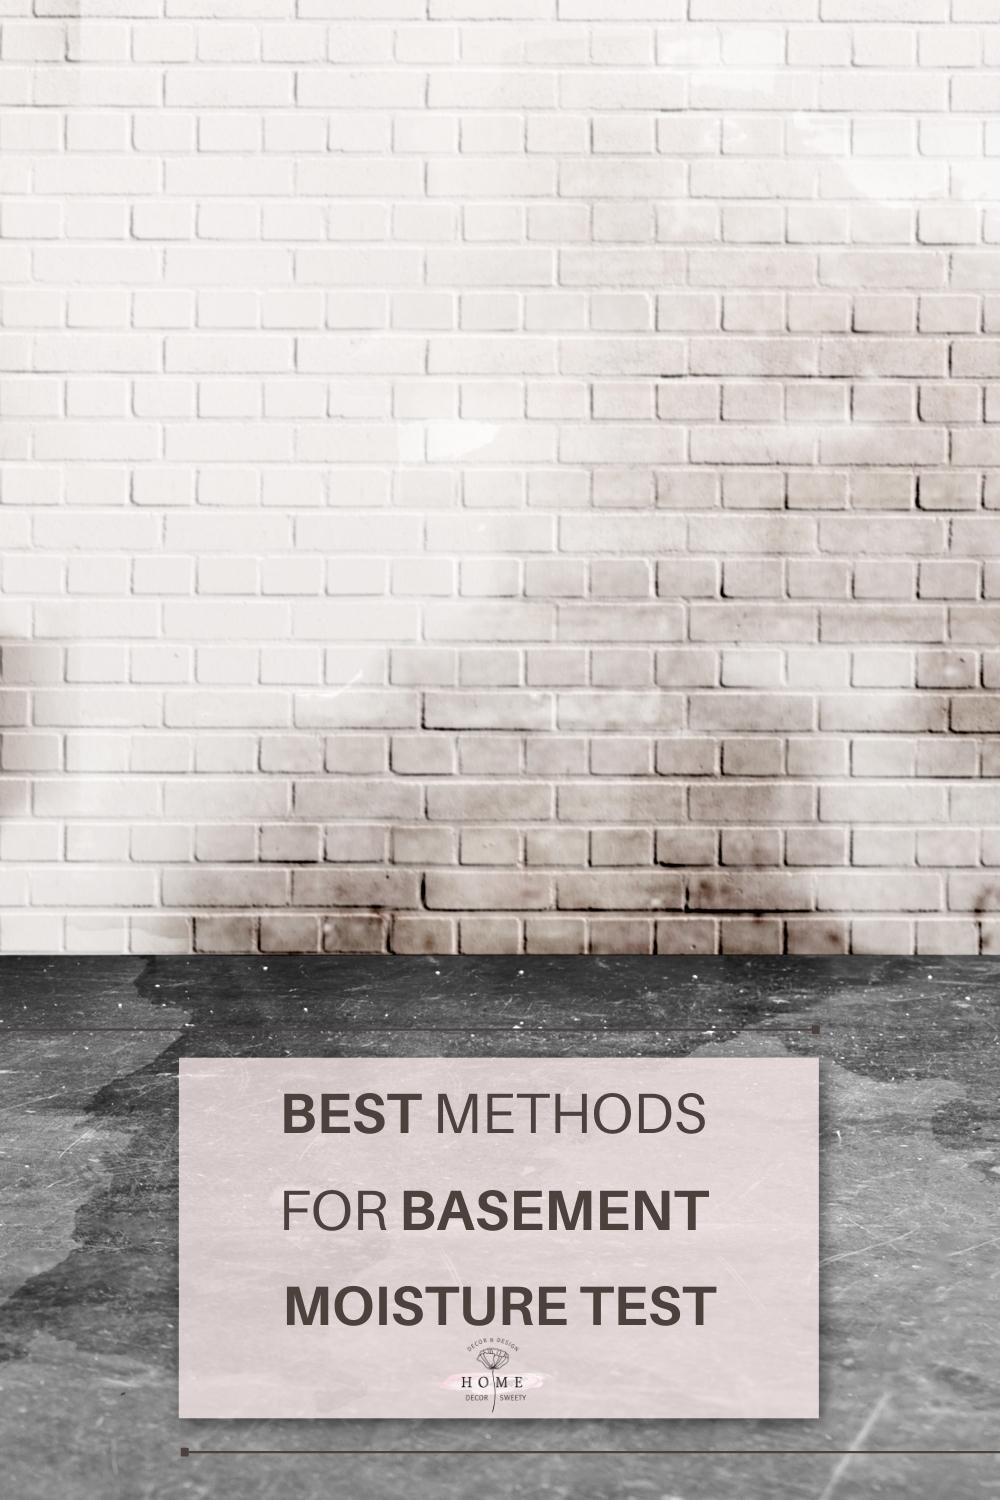 Best Methods for Basement moisture test